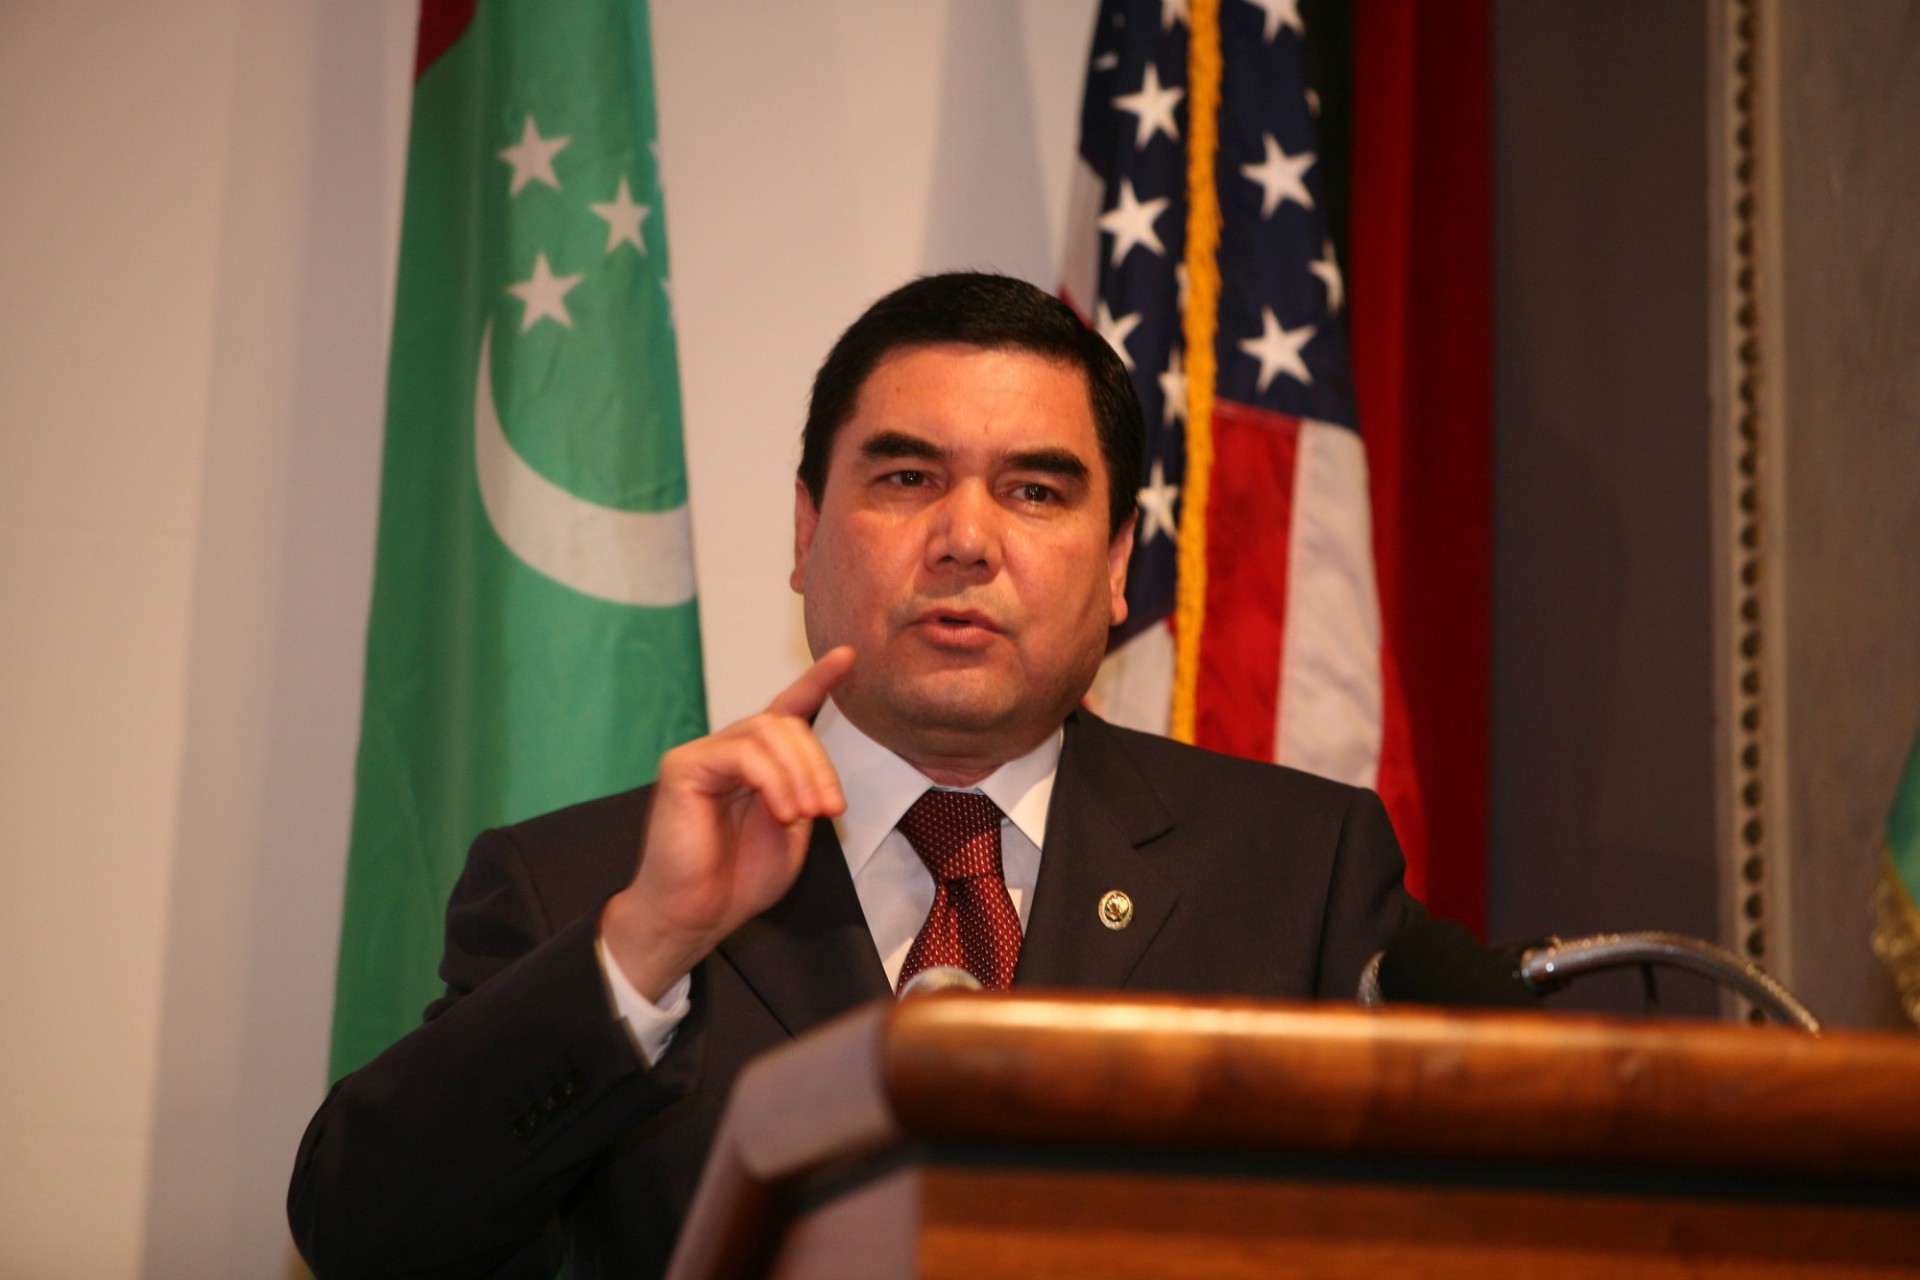 President Gurbanguly Berdymukhammedov of Turkmenistan